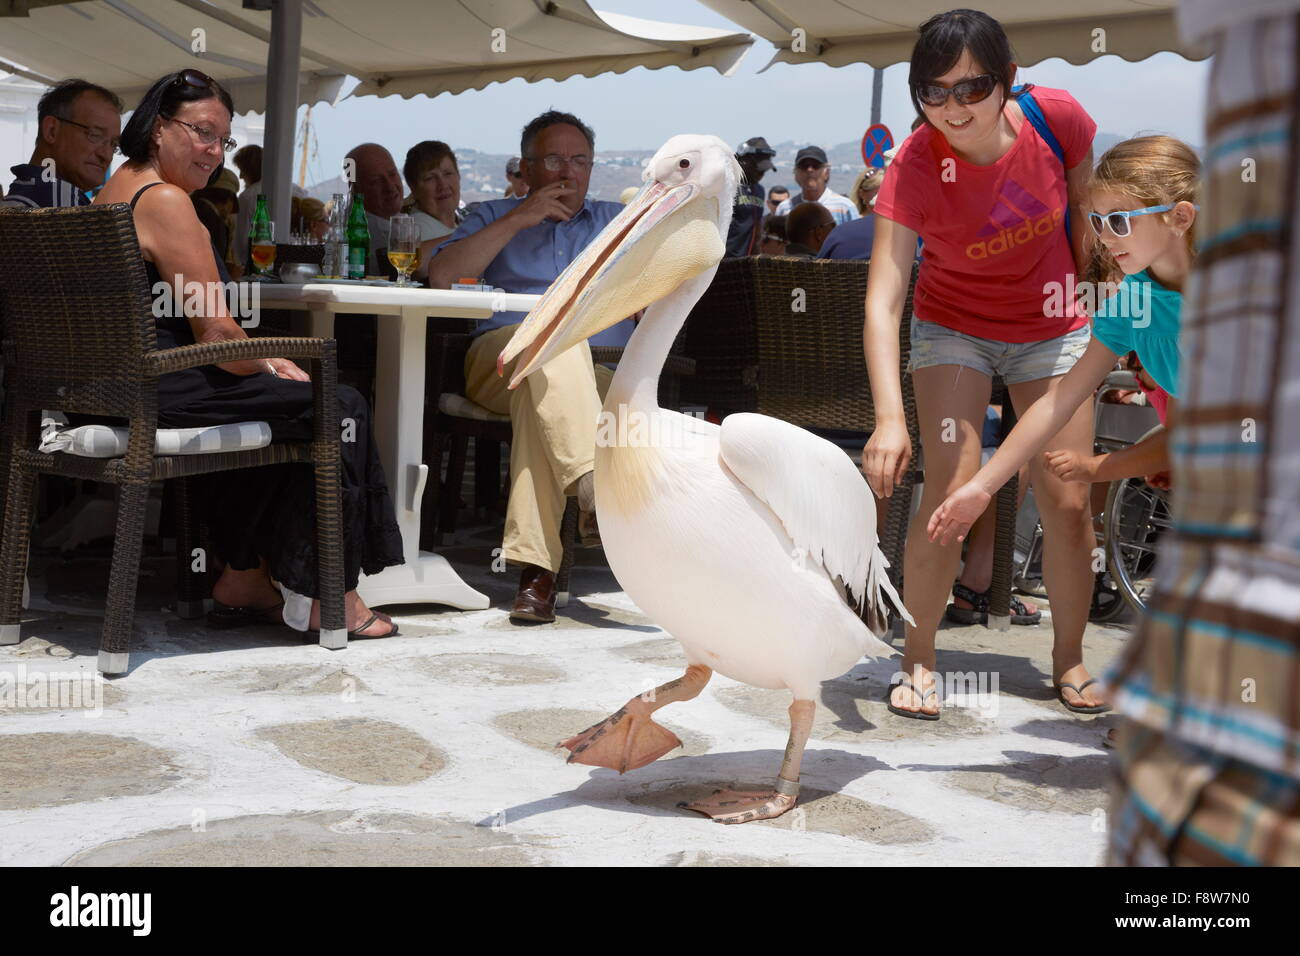 Mykonos - Cyclades Islands, Greece, pelican Petros Stock Photo